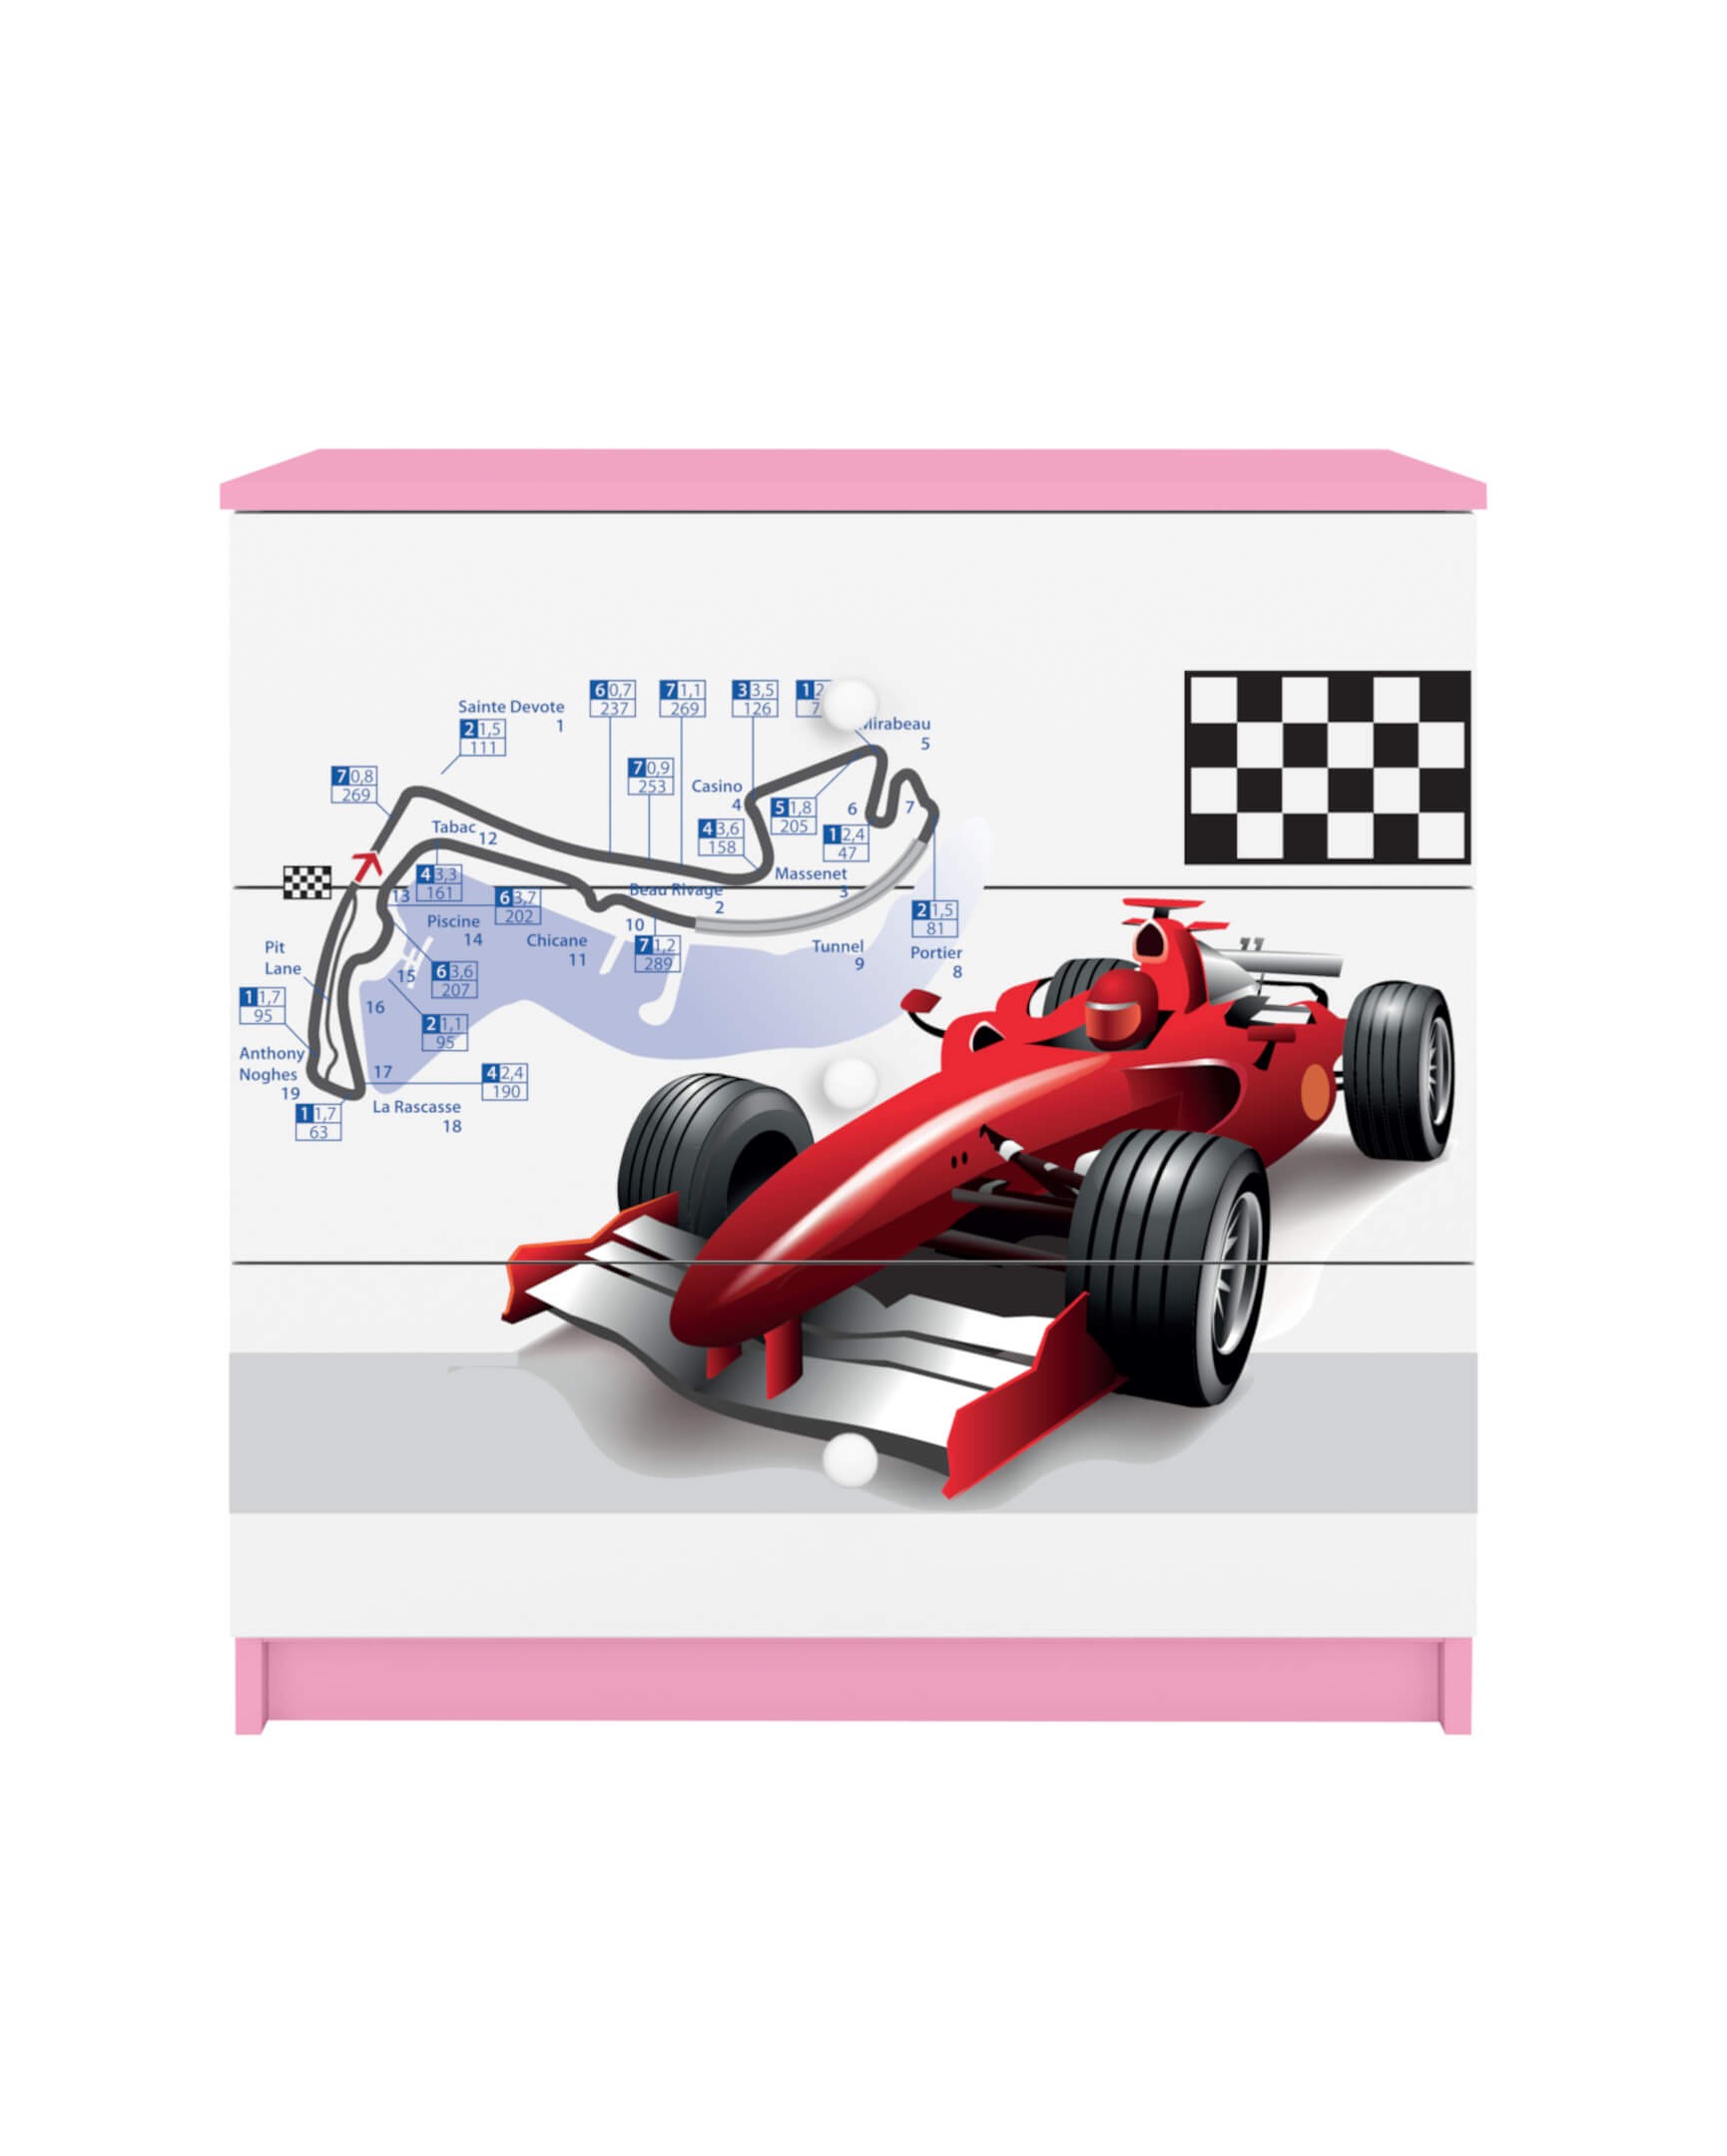 Dodatki w kolorze: różowym/komoda formuła F1